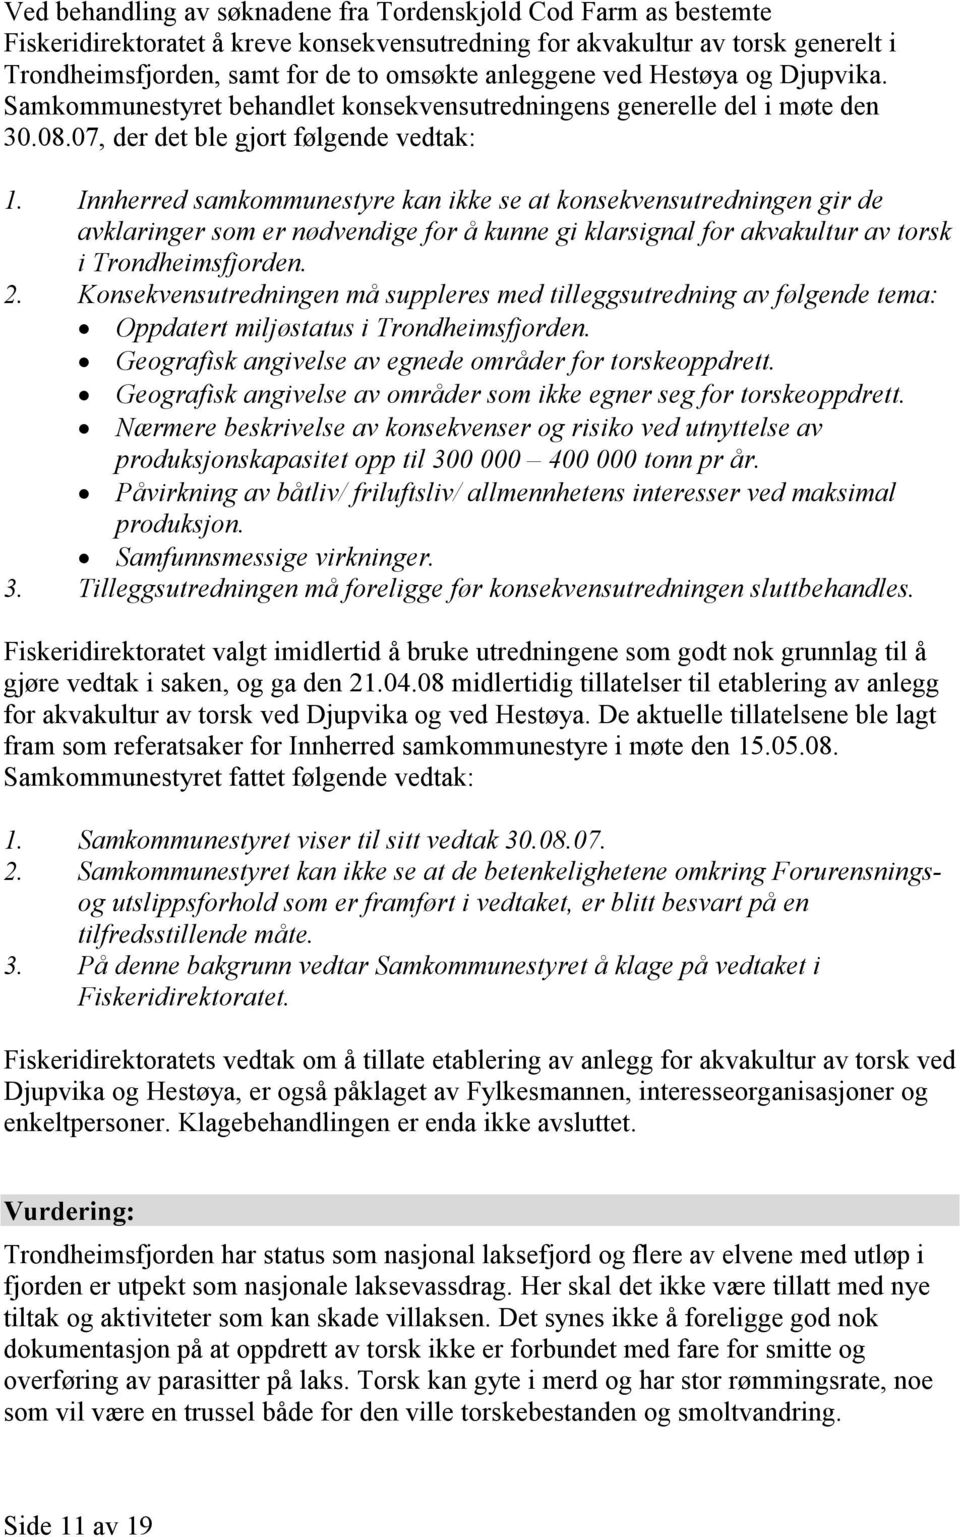 Innherred samkommunestyre kan ikke se at konsekvensutredningen gir de avklaringer som er nødvendige for å kunne gi klarsignal for akvakultur av torsk i Trondheimsfjorden. 2.